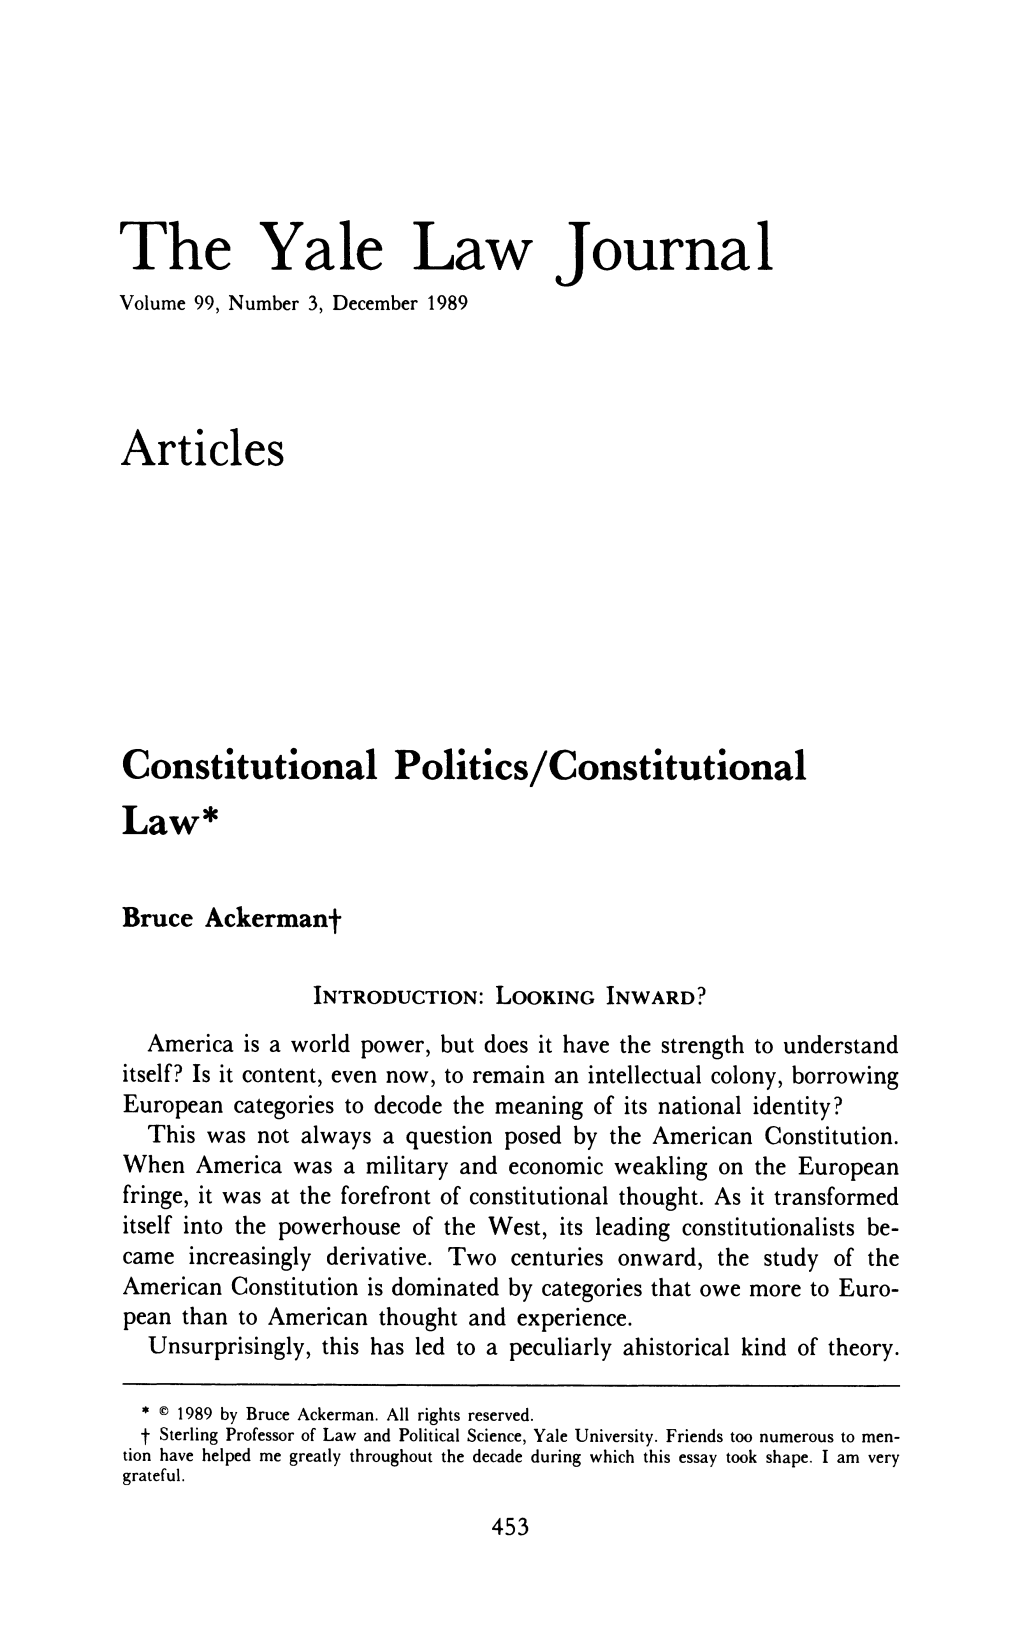 Constitutional Politics/Constitutional Law*